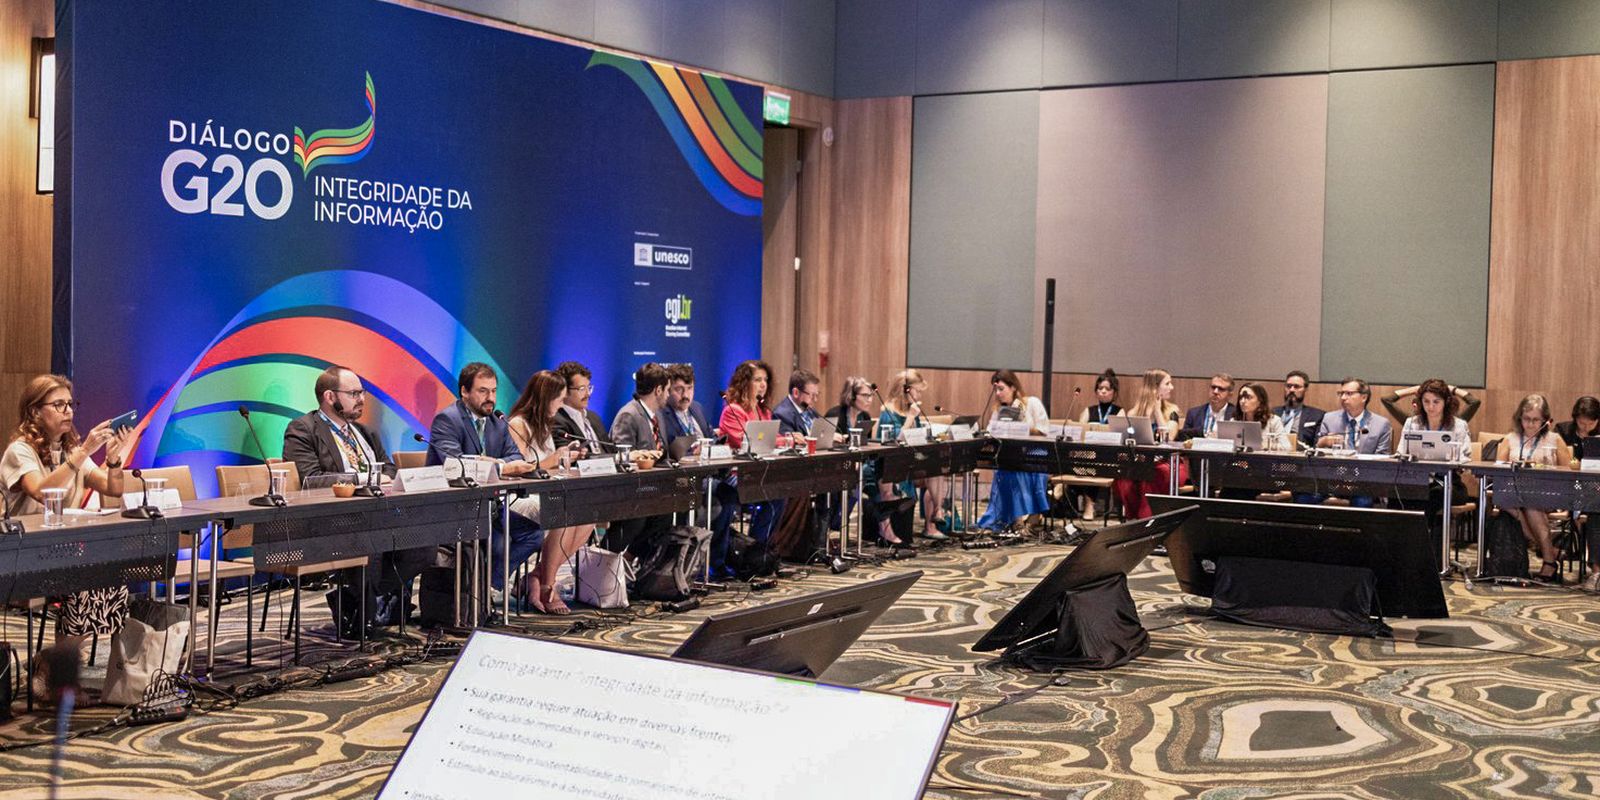 Evento do G20 em São Paulo debate informação como bem público